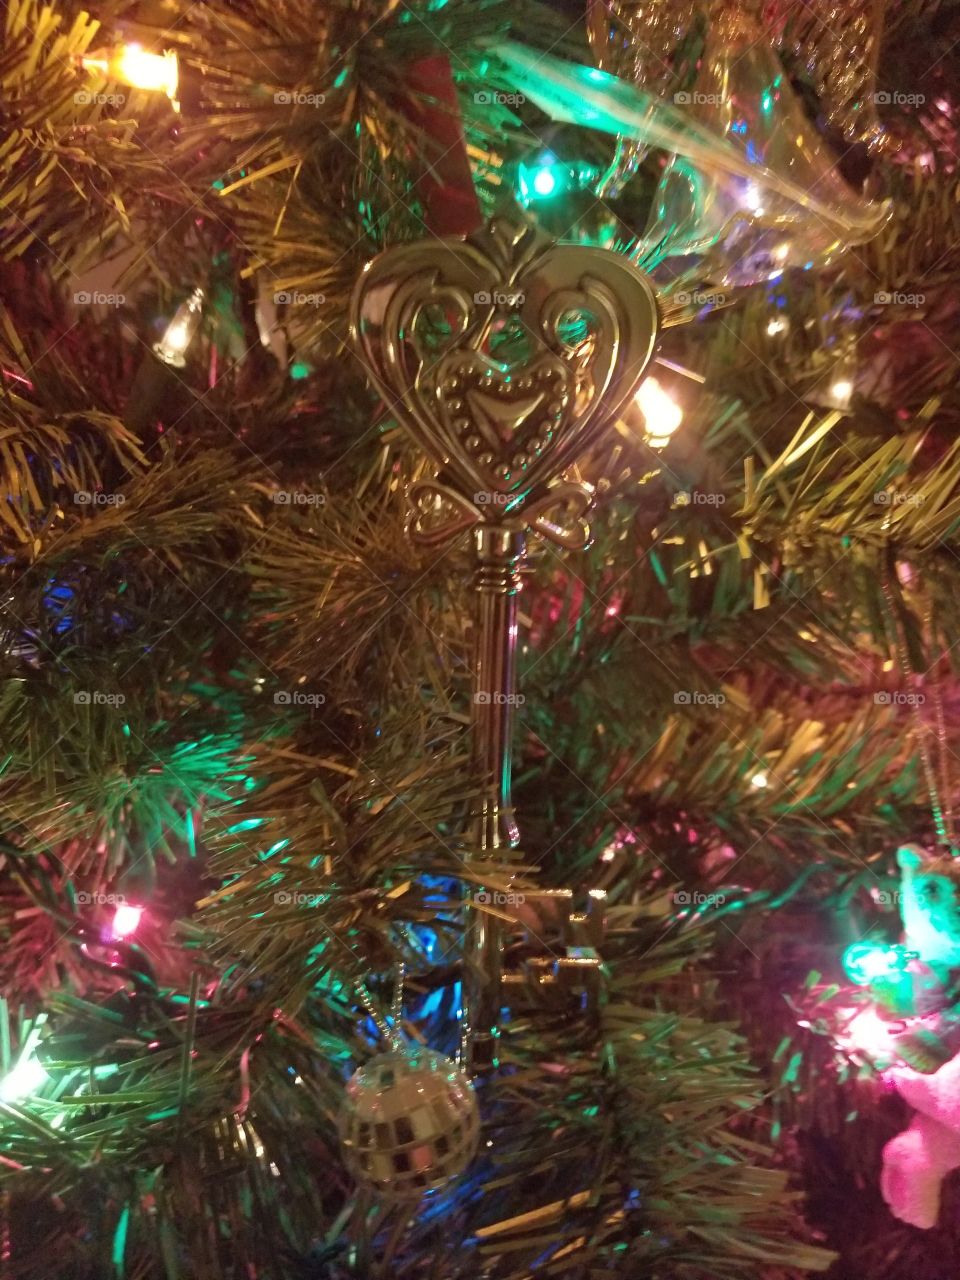 Key to Christmas